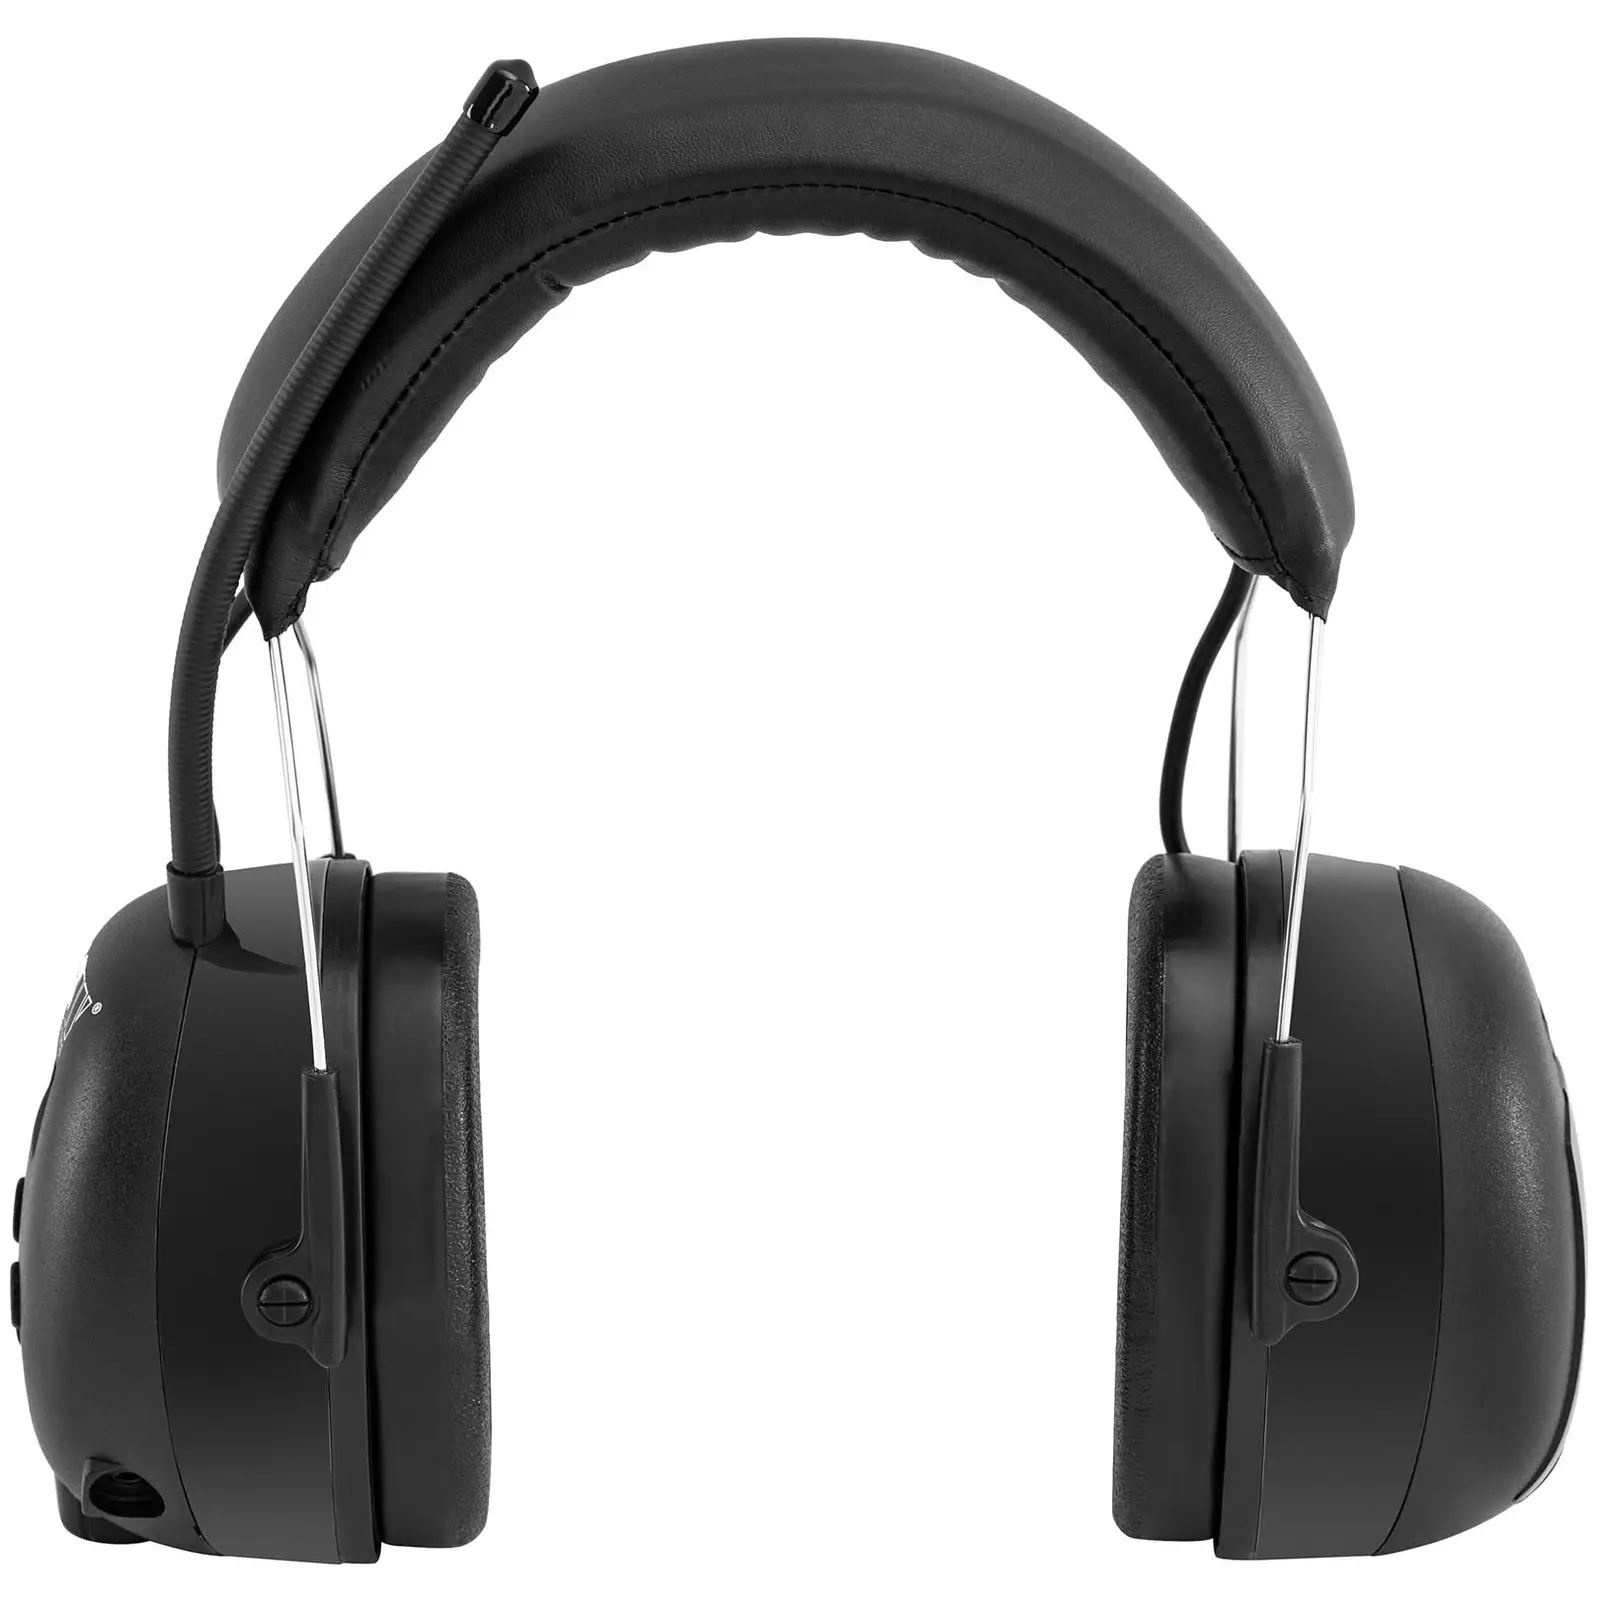 Pracovní sluchátka s Bluetooth - mikrofon - LCD displej - baterie - černá barva